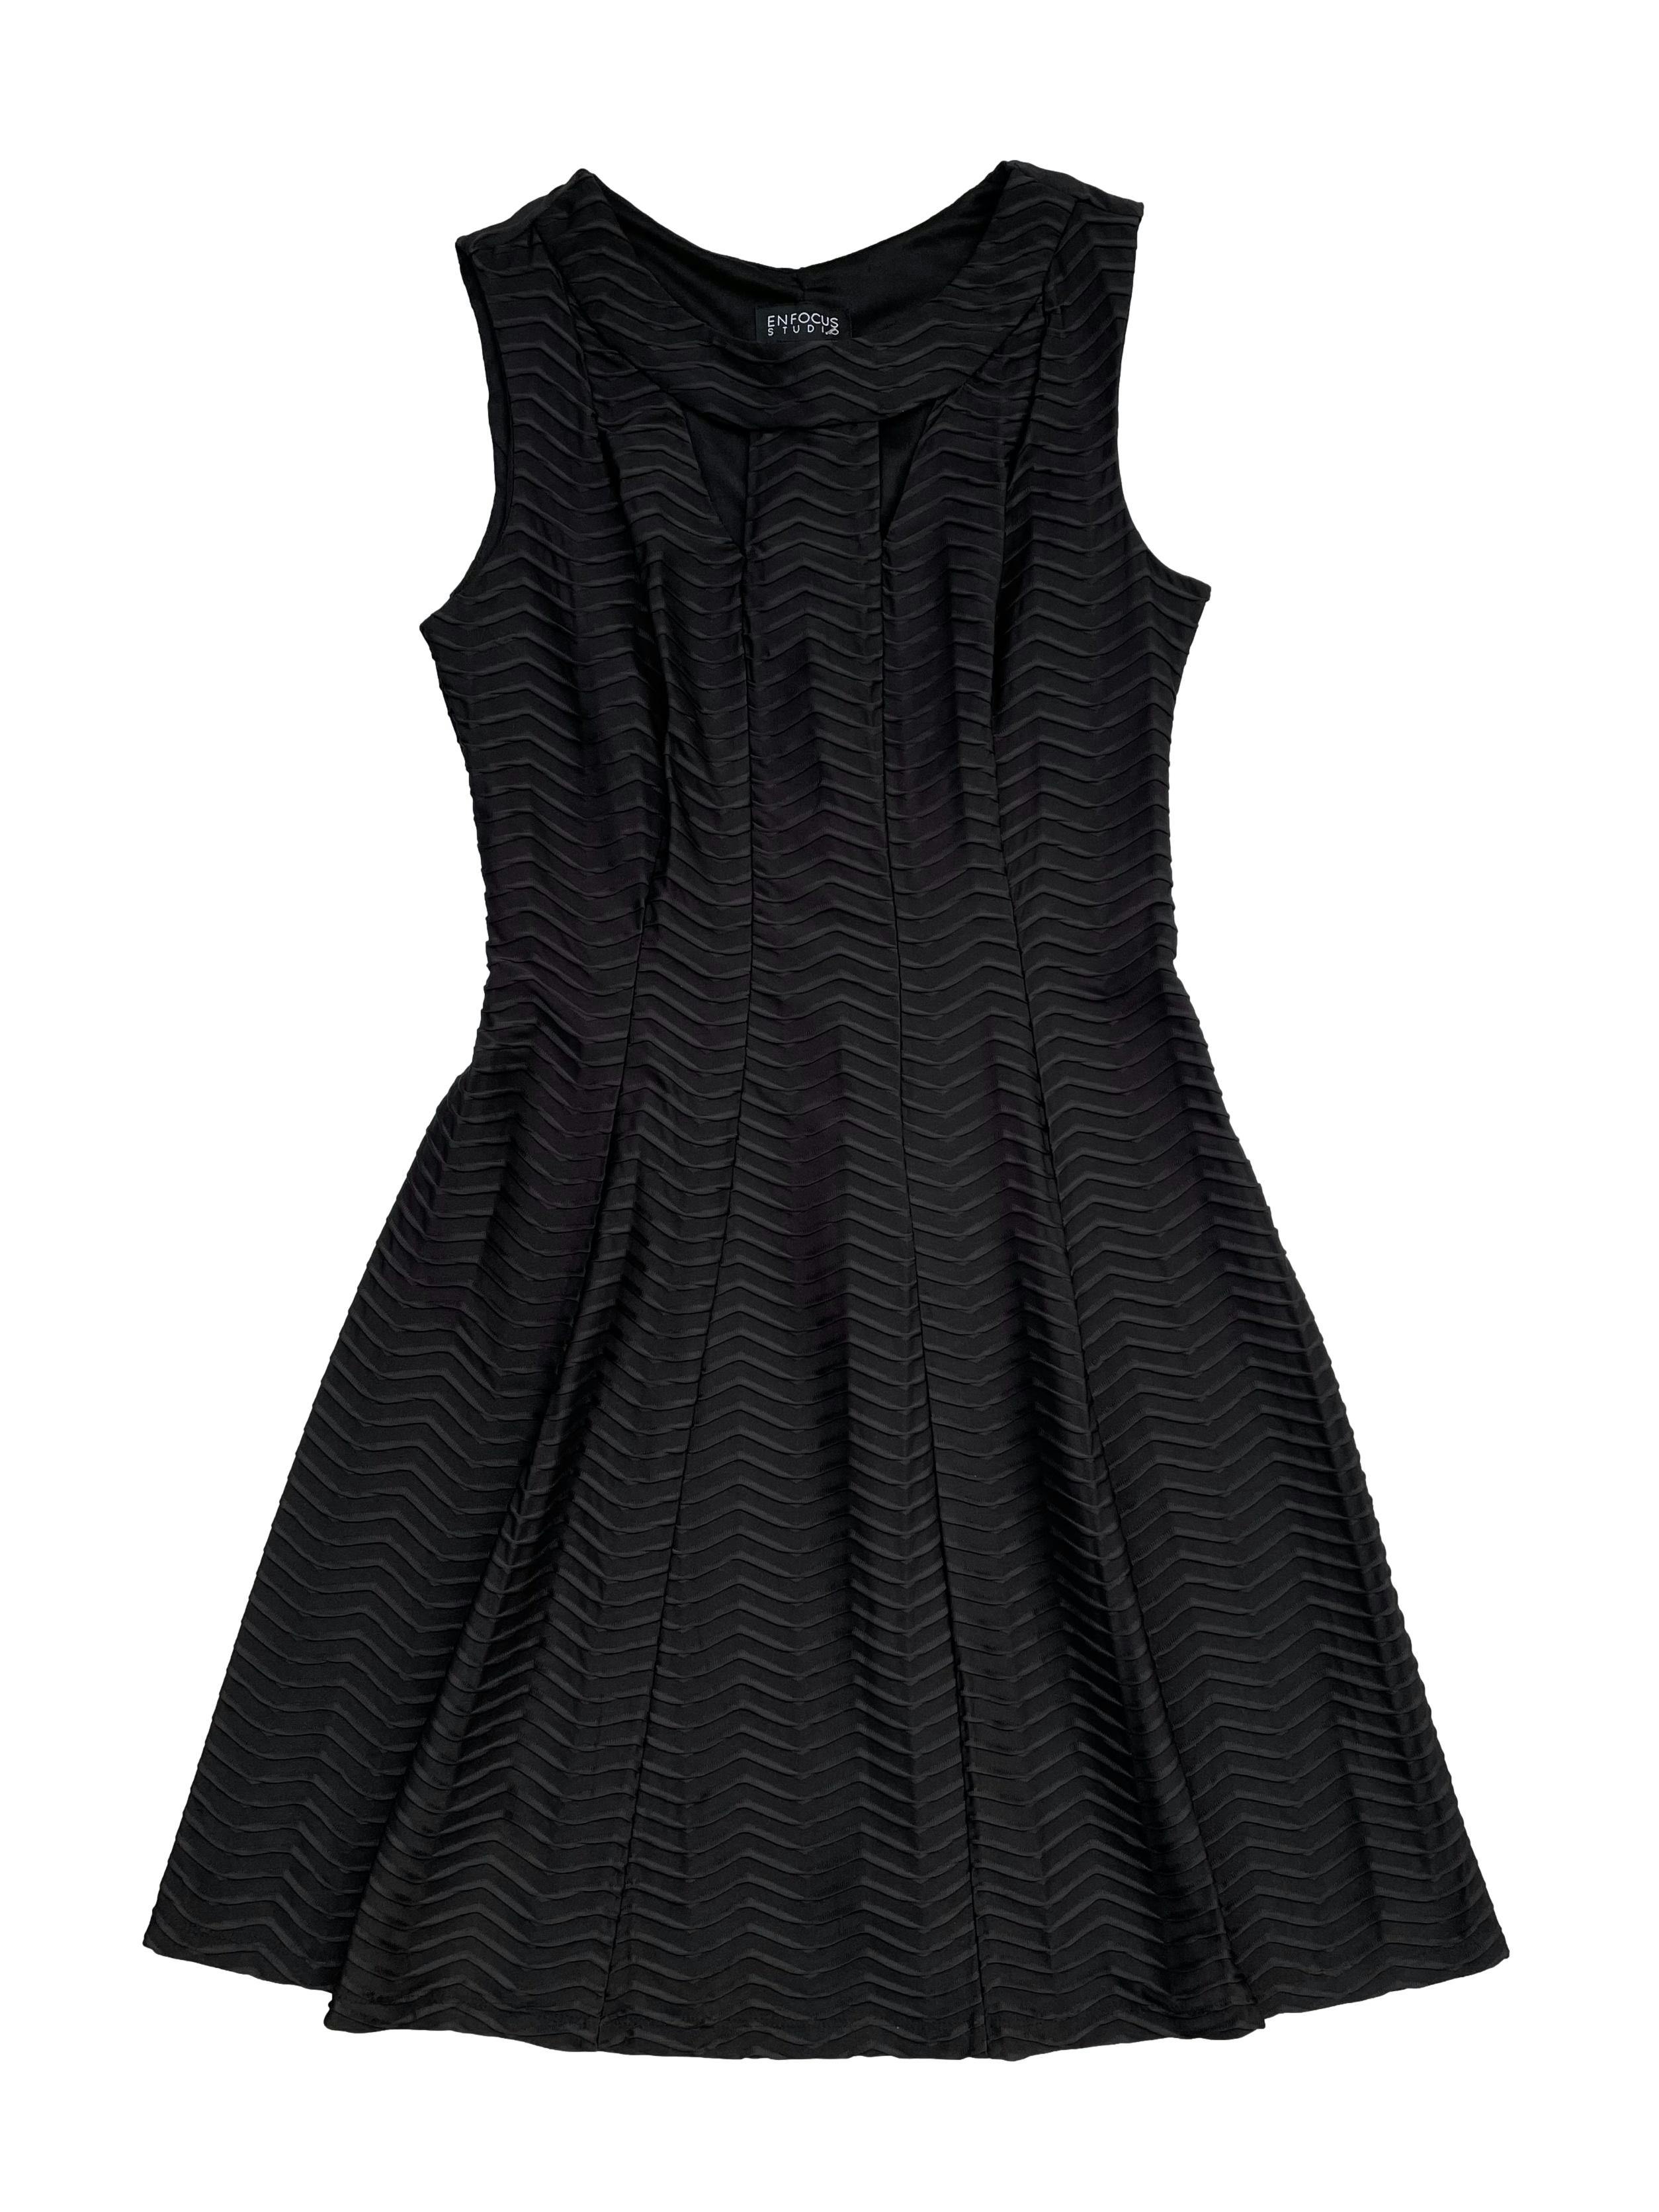 Vestido negro de tela stretch textura zig zag, con aberturas en escote y forro en la parte superior. Busto 90cm sin estirar, Largo 95cm.